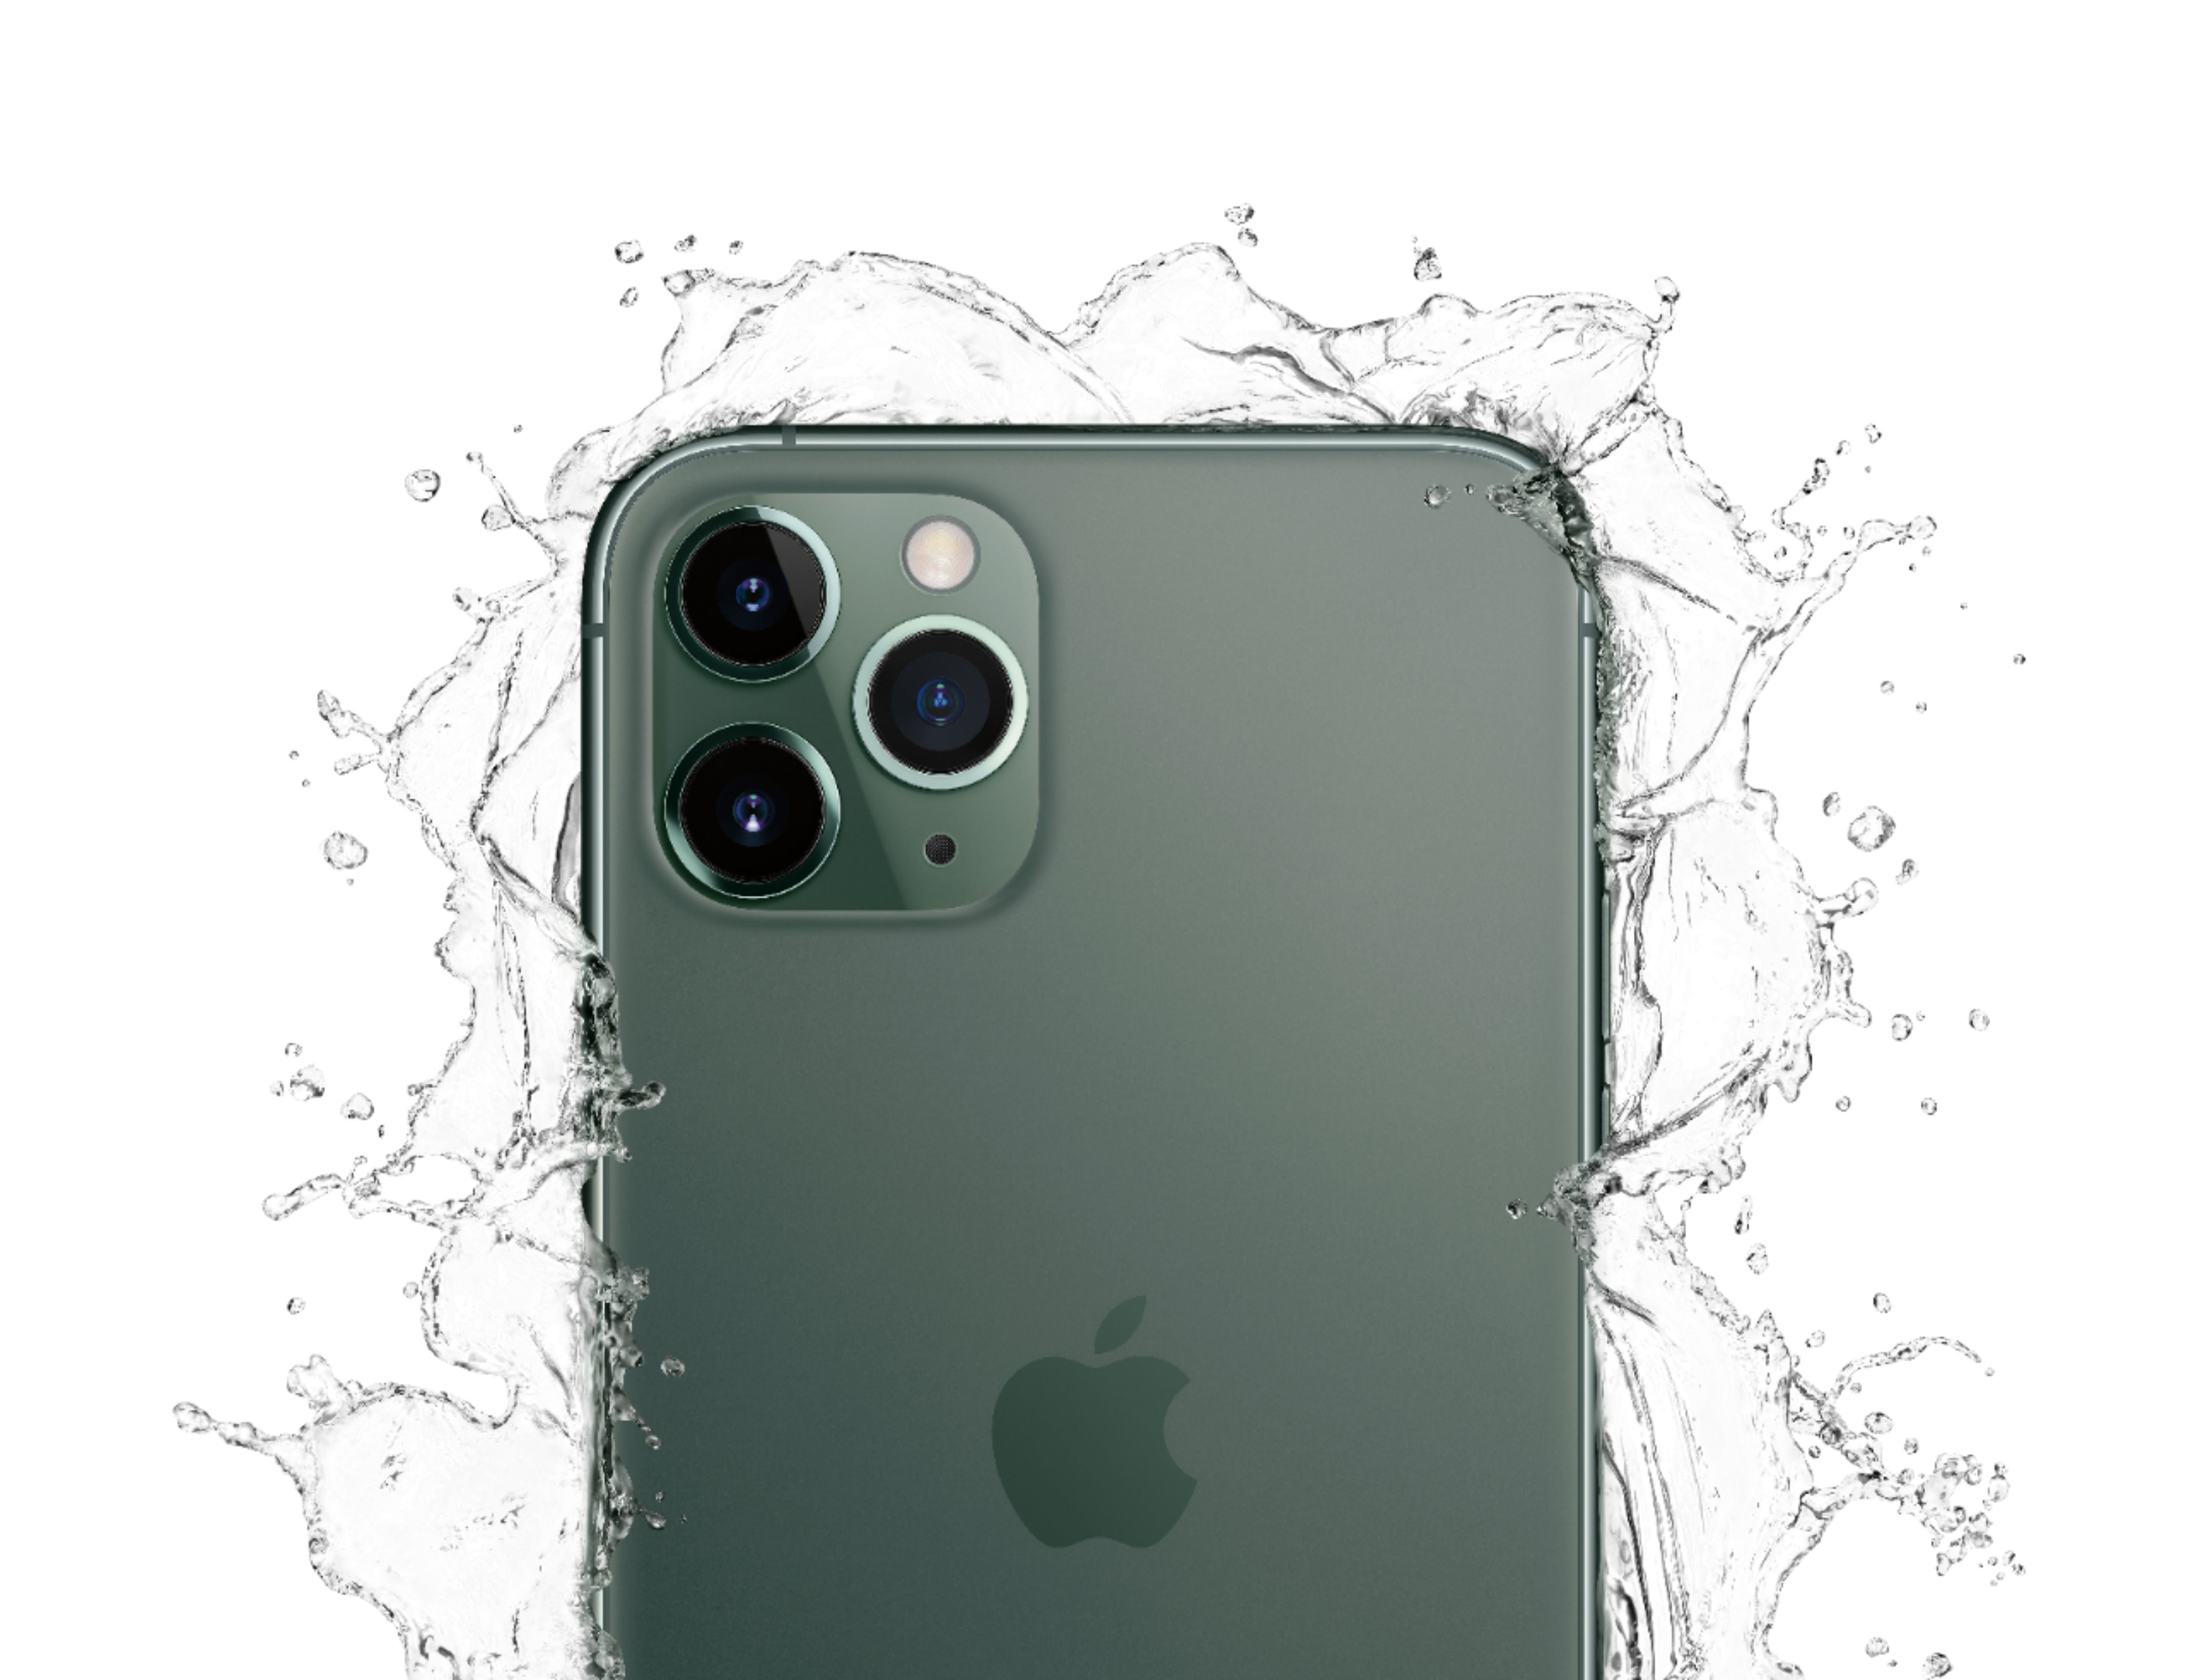 Best Buy: Apple iPhone 11 Pro 256GB Midnight Green (Verizon) MWCQ2LL/A